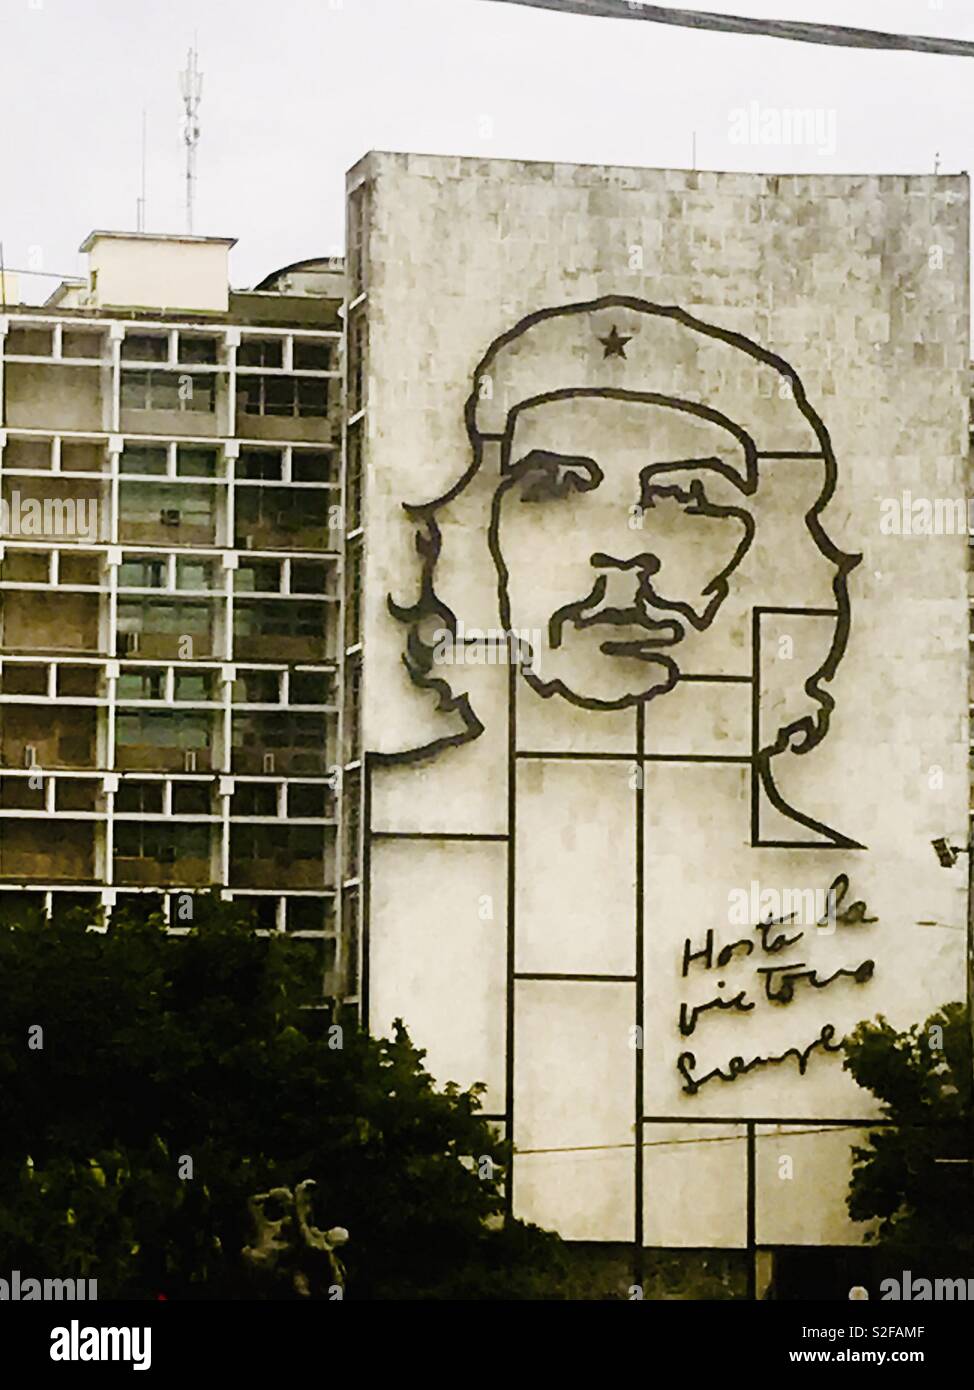 Ernesto Che Guevara volto delineato su un edificio, un argentino rivoluzionario marxista, medico, autore, il capo della guerriglia, diplomatico e teorico militare. Una figura importante della Rivoluzione Cubana. Foto Stock